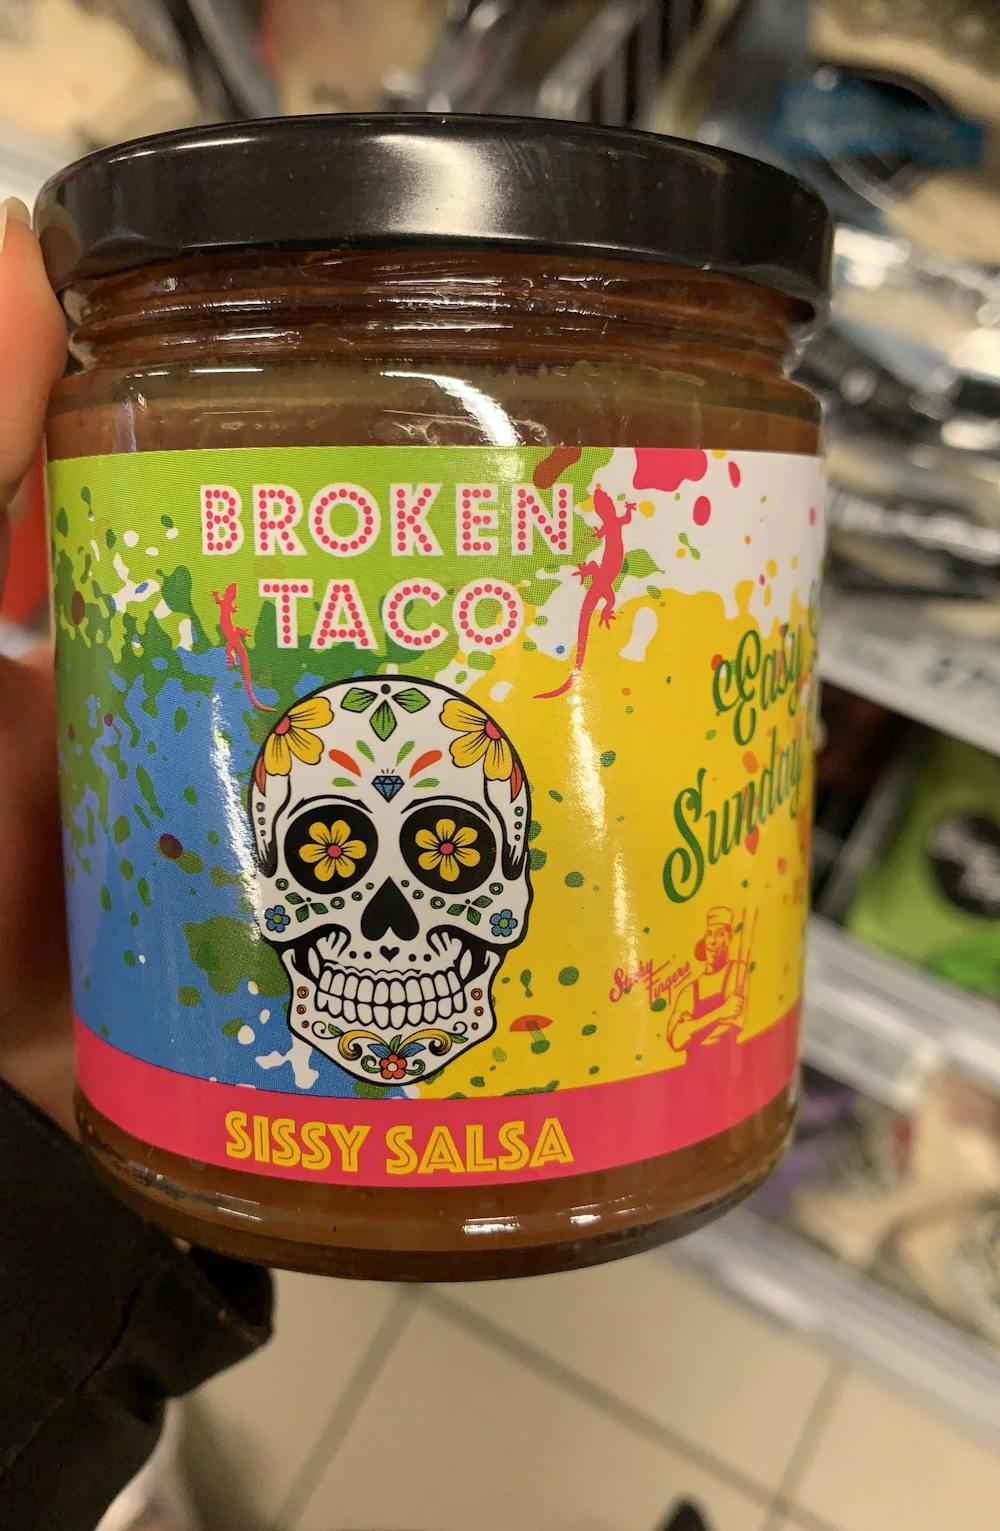 Sissy salsa, Broken taco